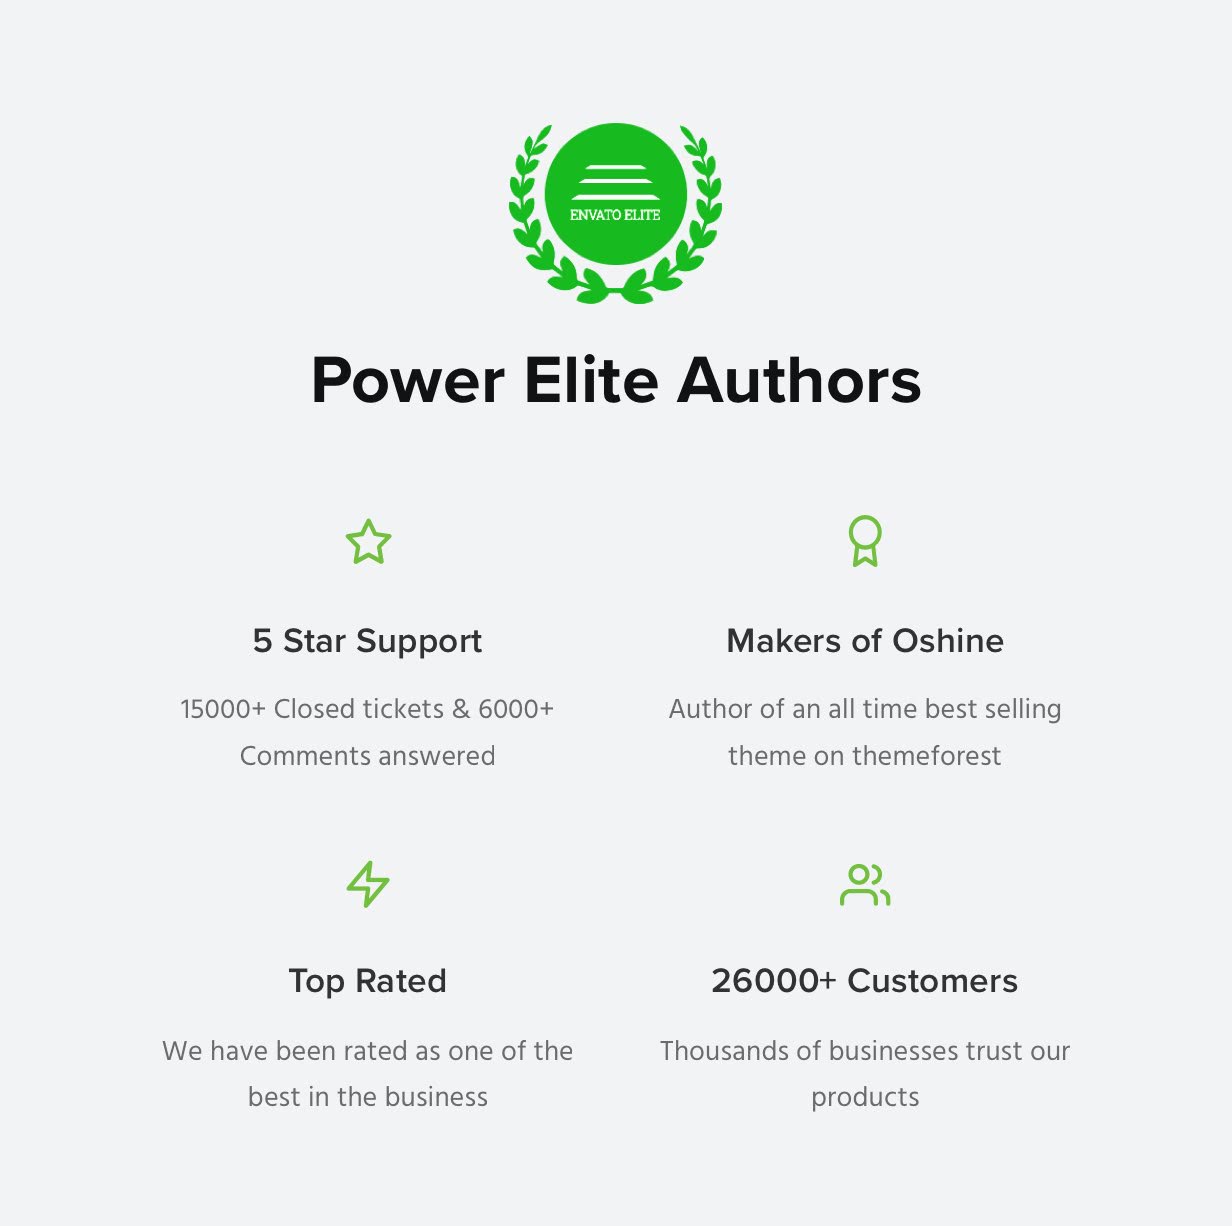 Power Elite Authors